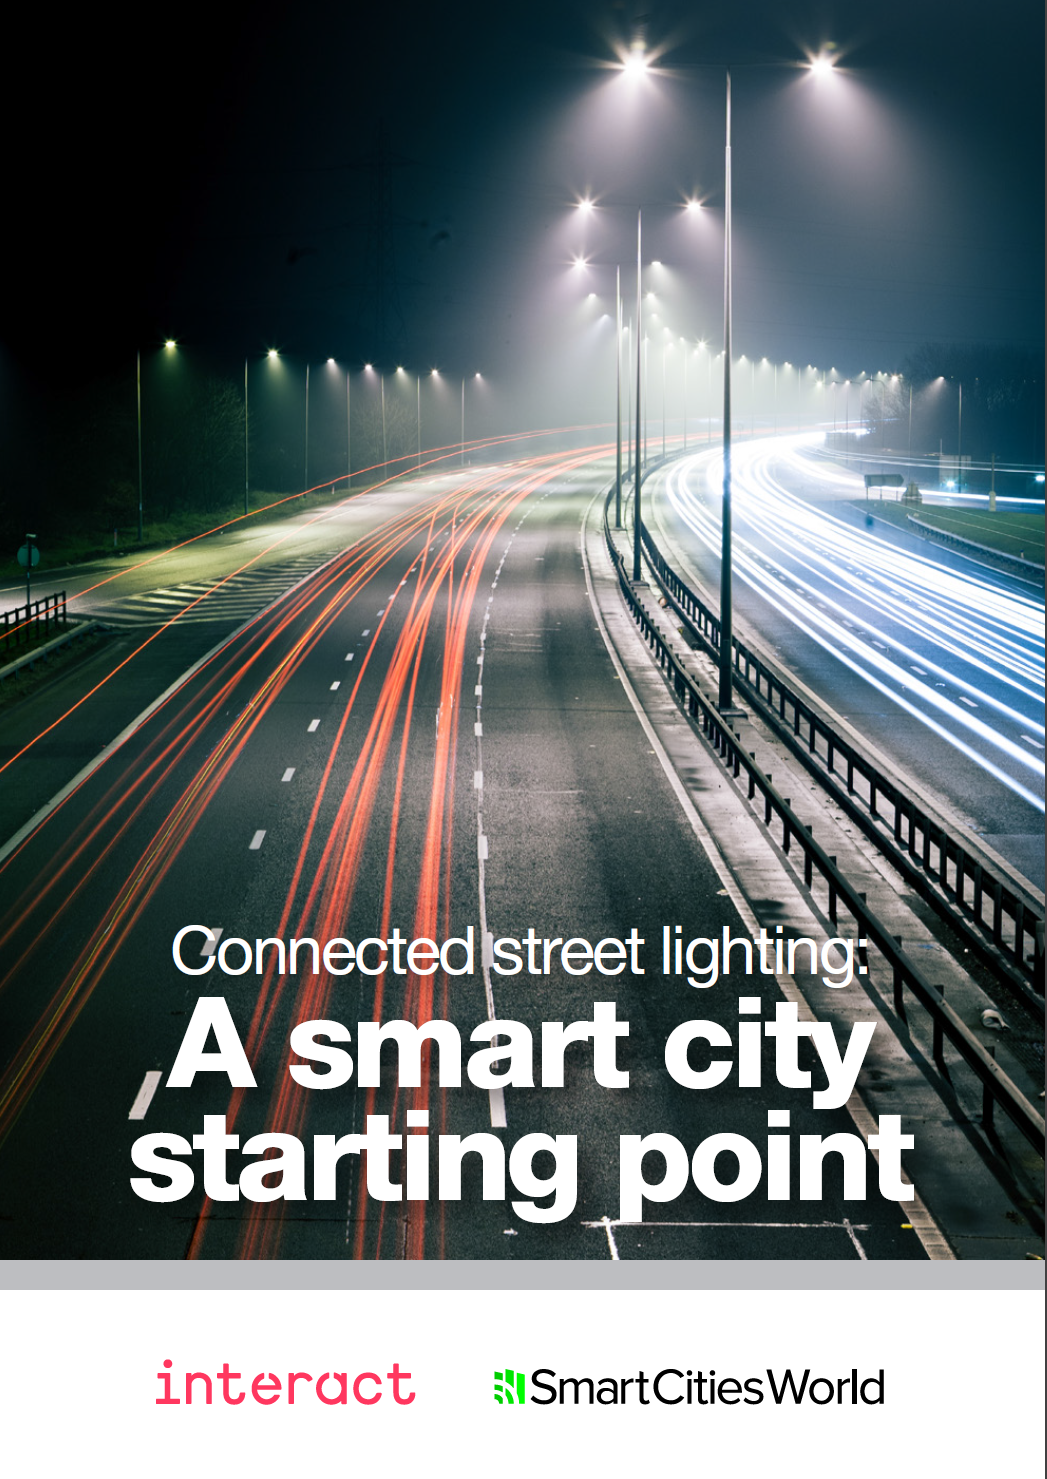 互联路灯:智慧城市的起点